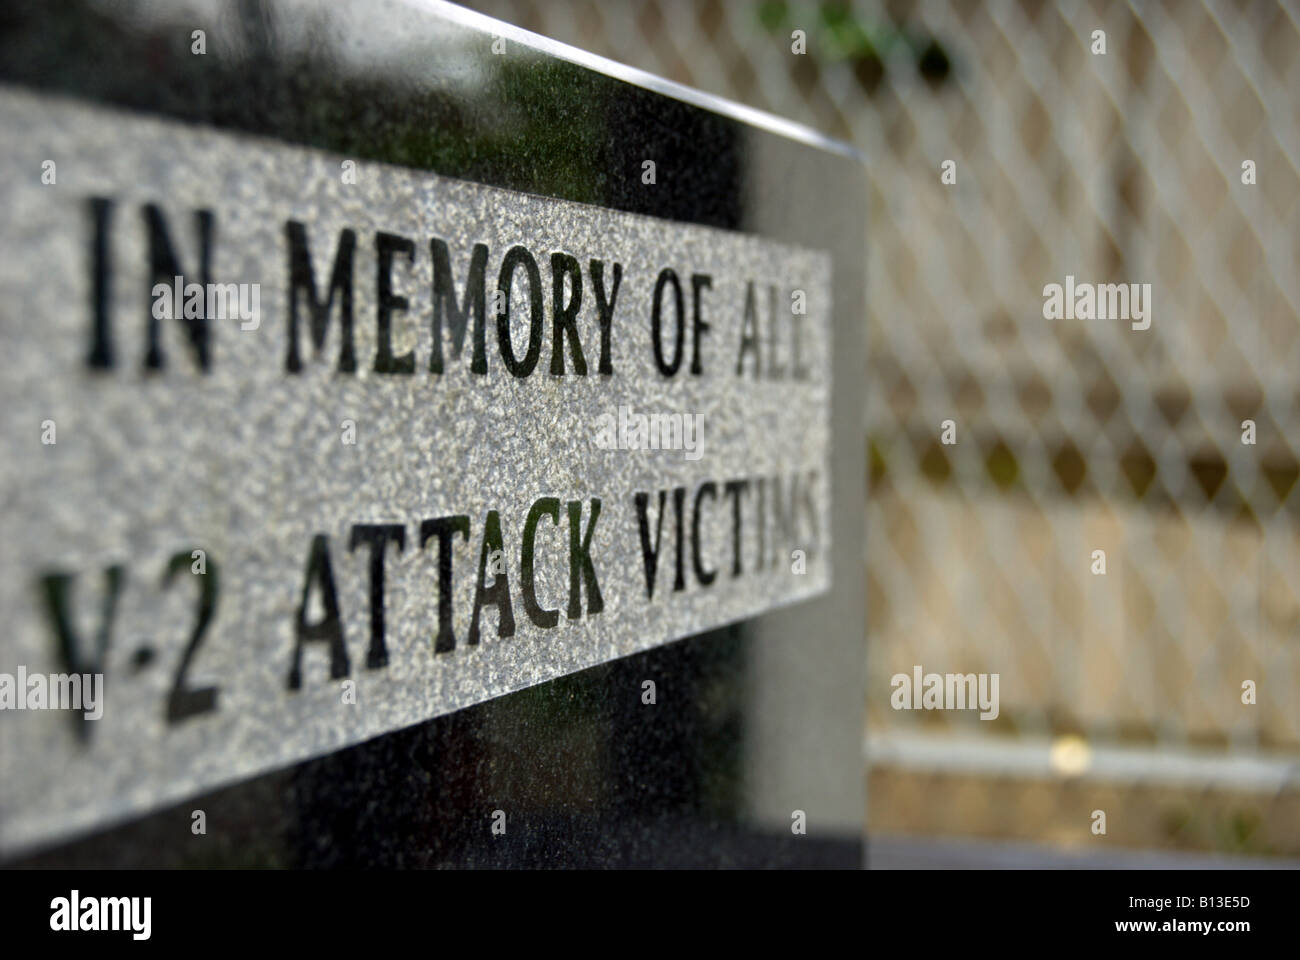 Detail eines Denkmals für die Opfer der v2-Rakete angreift, an der Stelle, wo die ersten v2-Rakete London getroffen Stockfoto